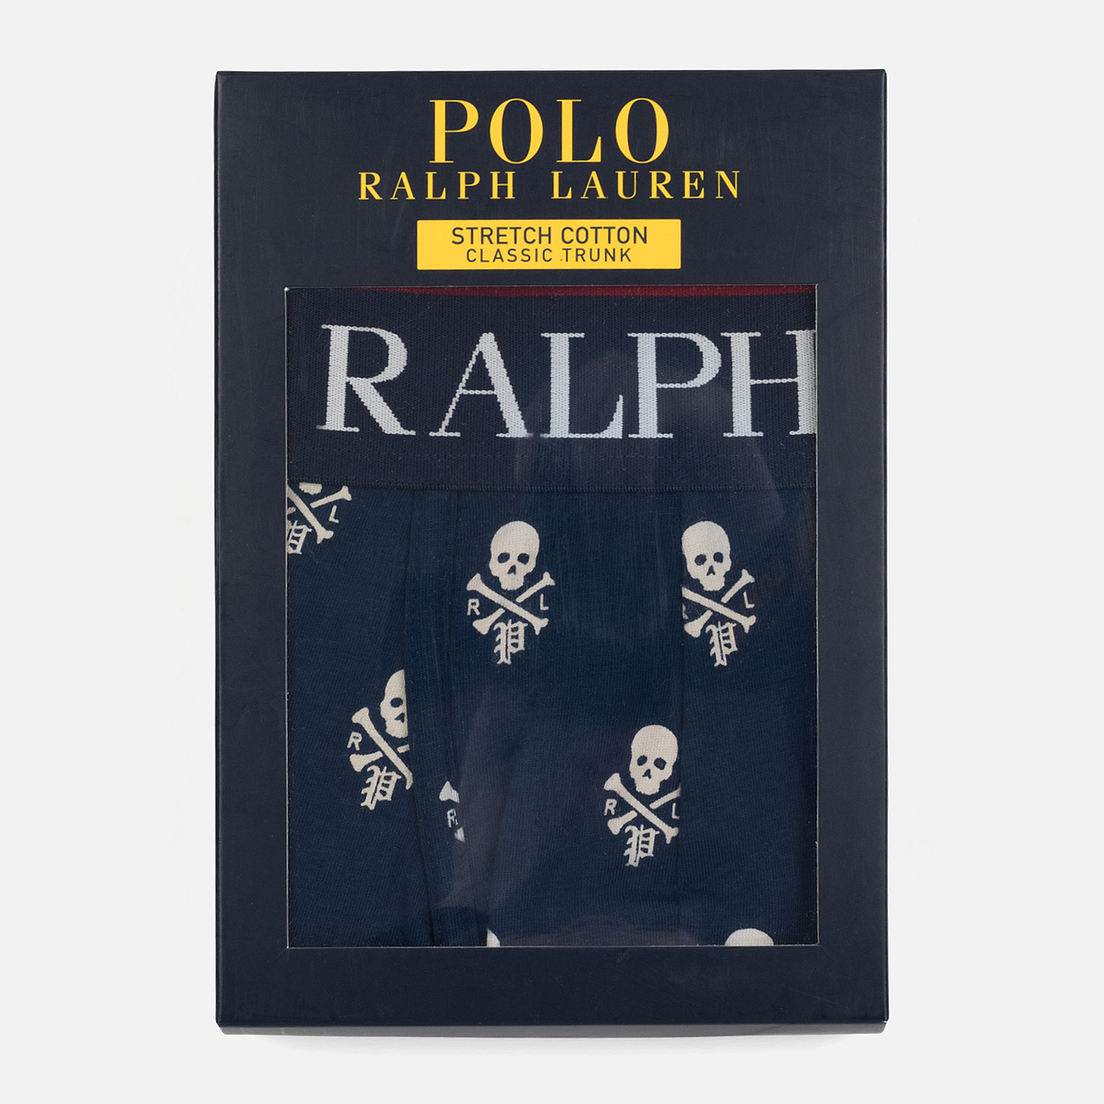 Polo Ralph Lauren Мужские трусы Single Print Trunk